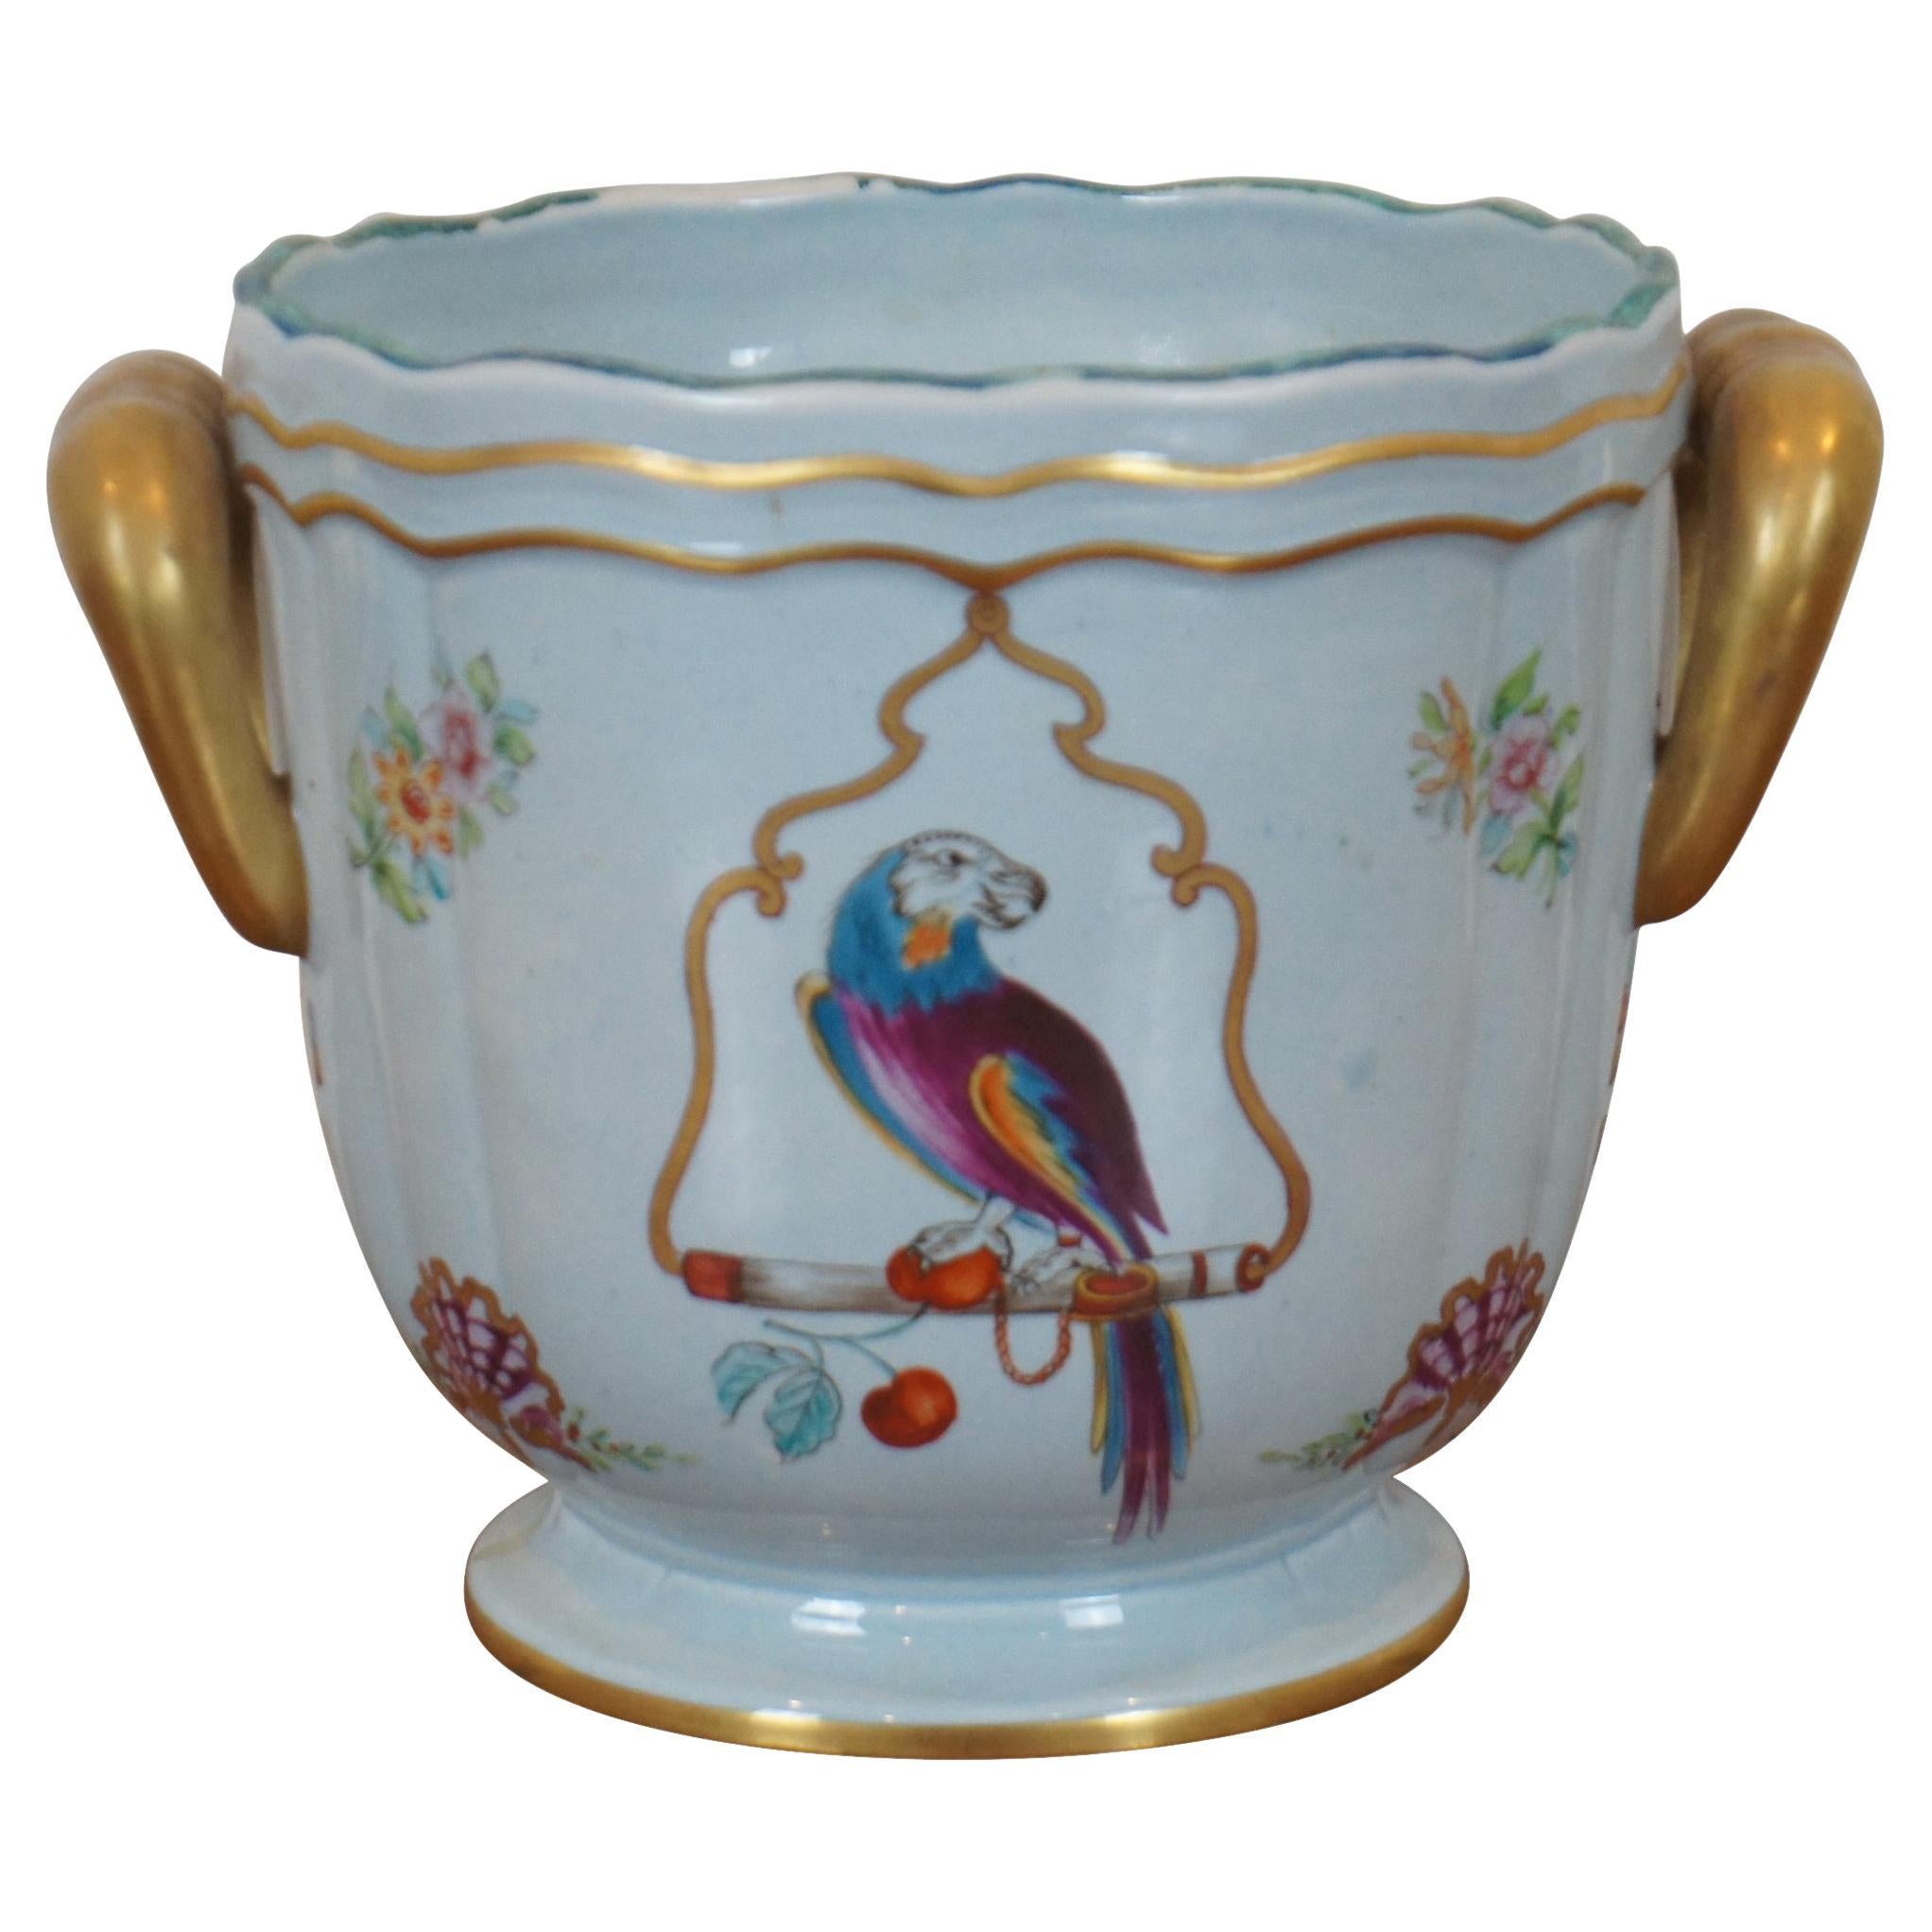 Italian Lowestoft Reproduction Mottahedeh Parrot Bird Cache Pot Vase Planter